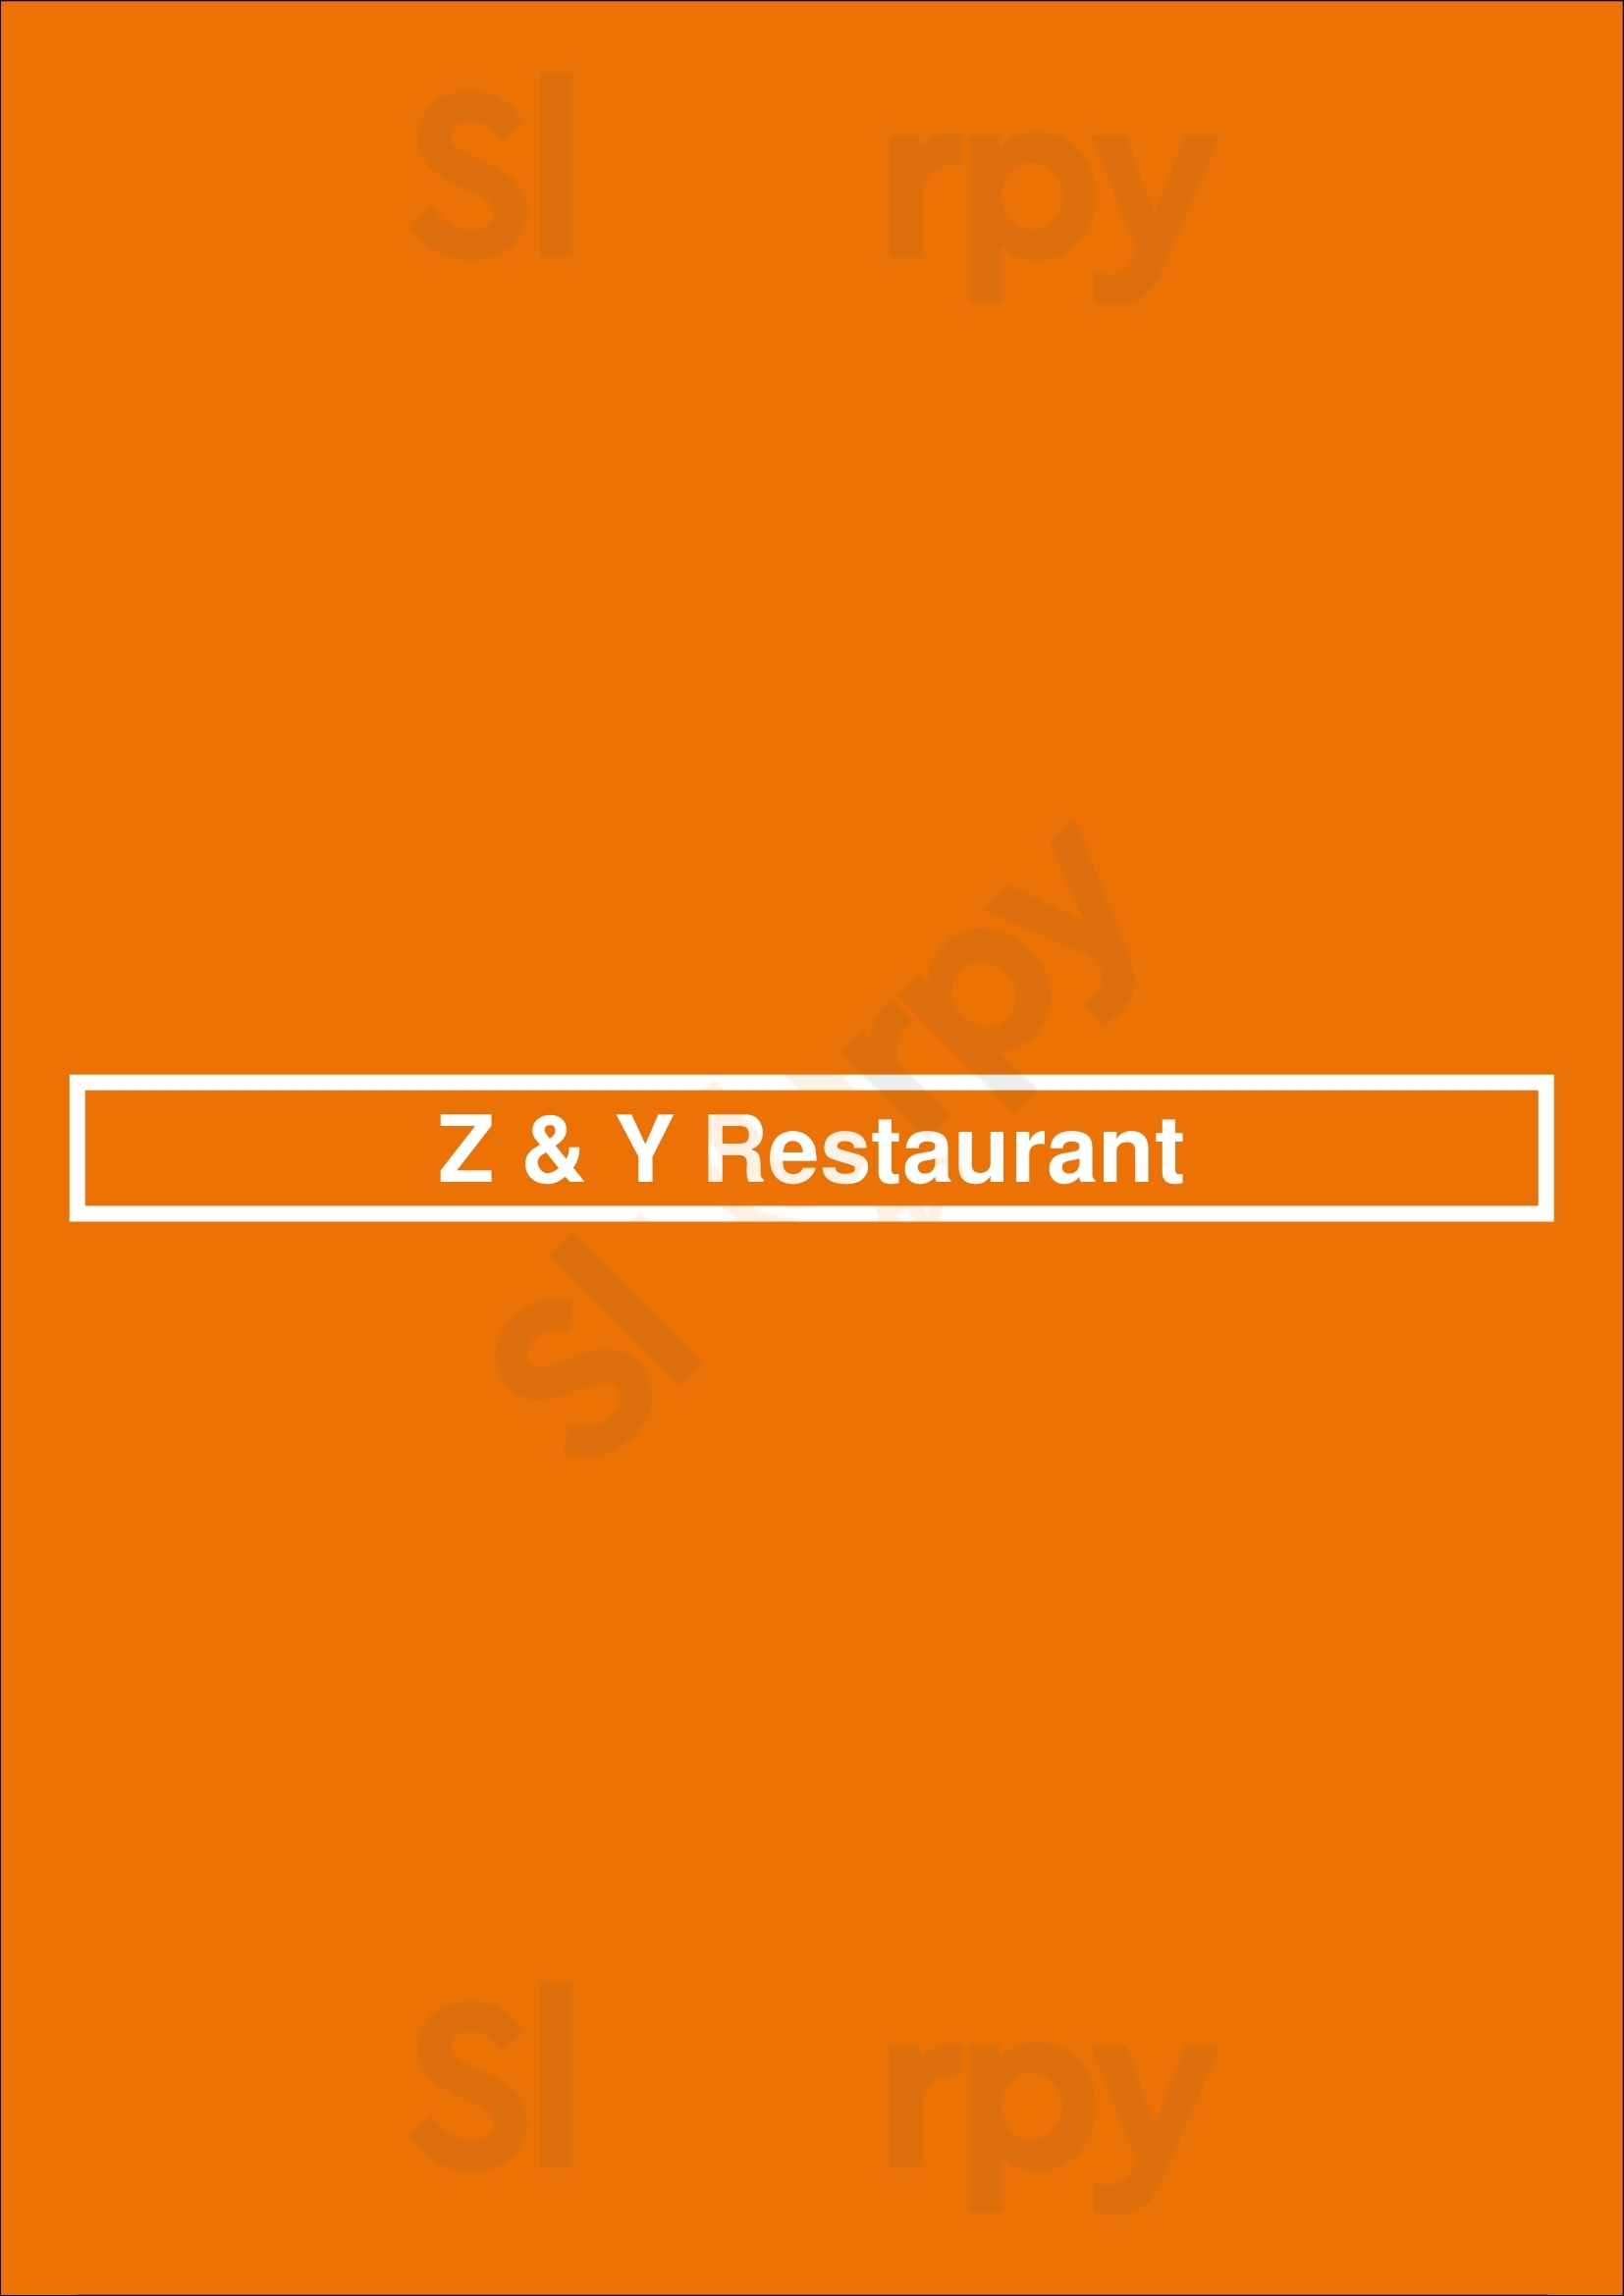 Z & Y Restaurant San Francisco Menu - 1